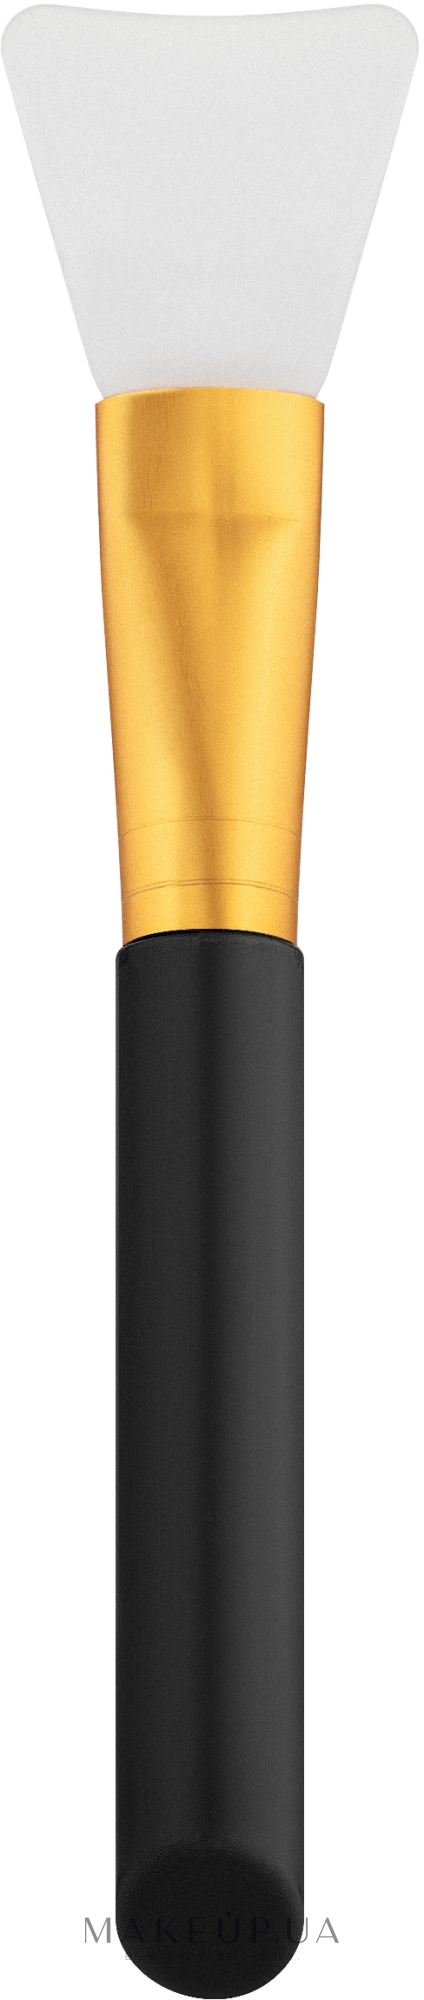 Силіконовий пензлик для нанесення масок, CS-119, чорний